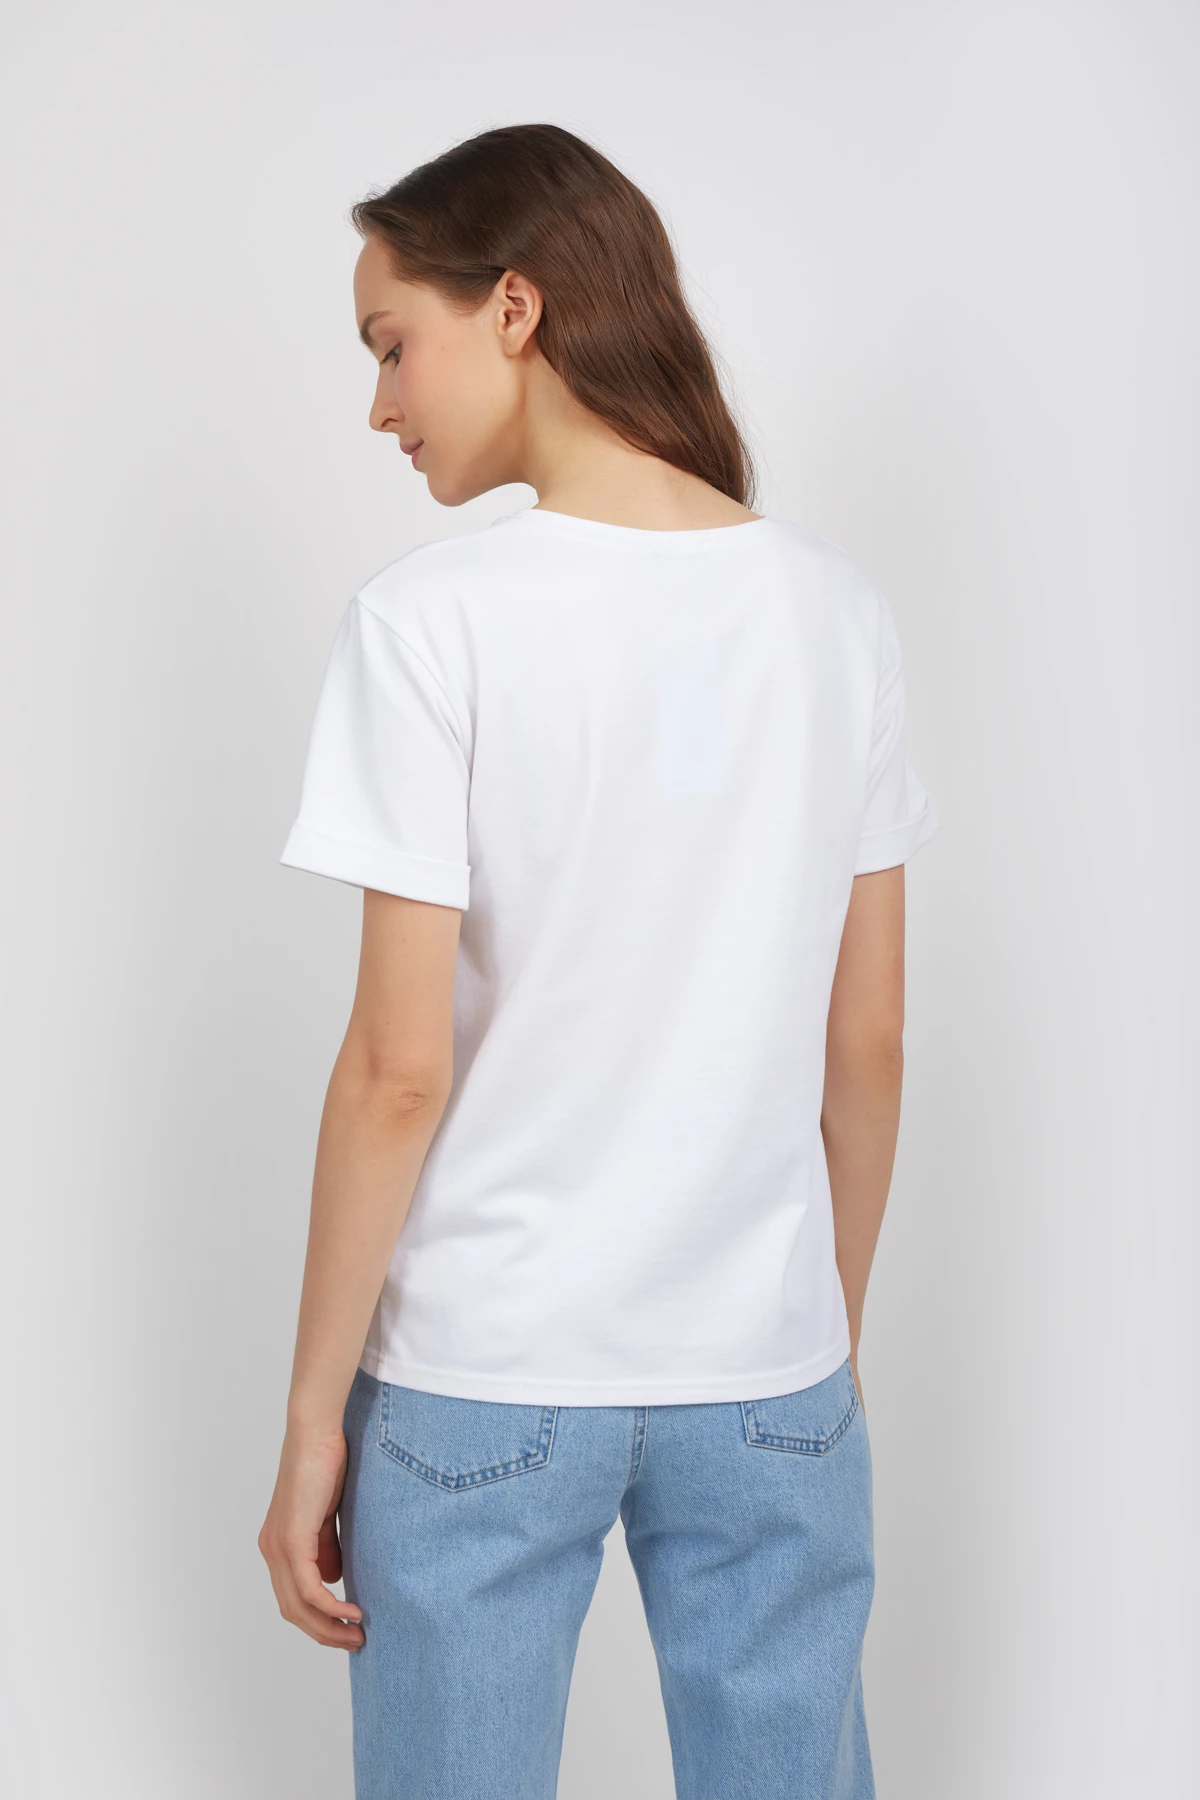 Біла футболка зі спущеною лінією плеча і манжетами, фото 3